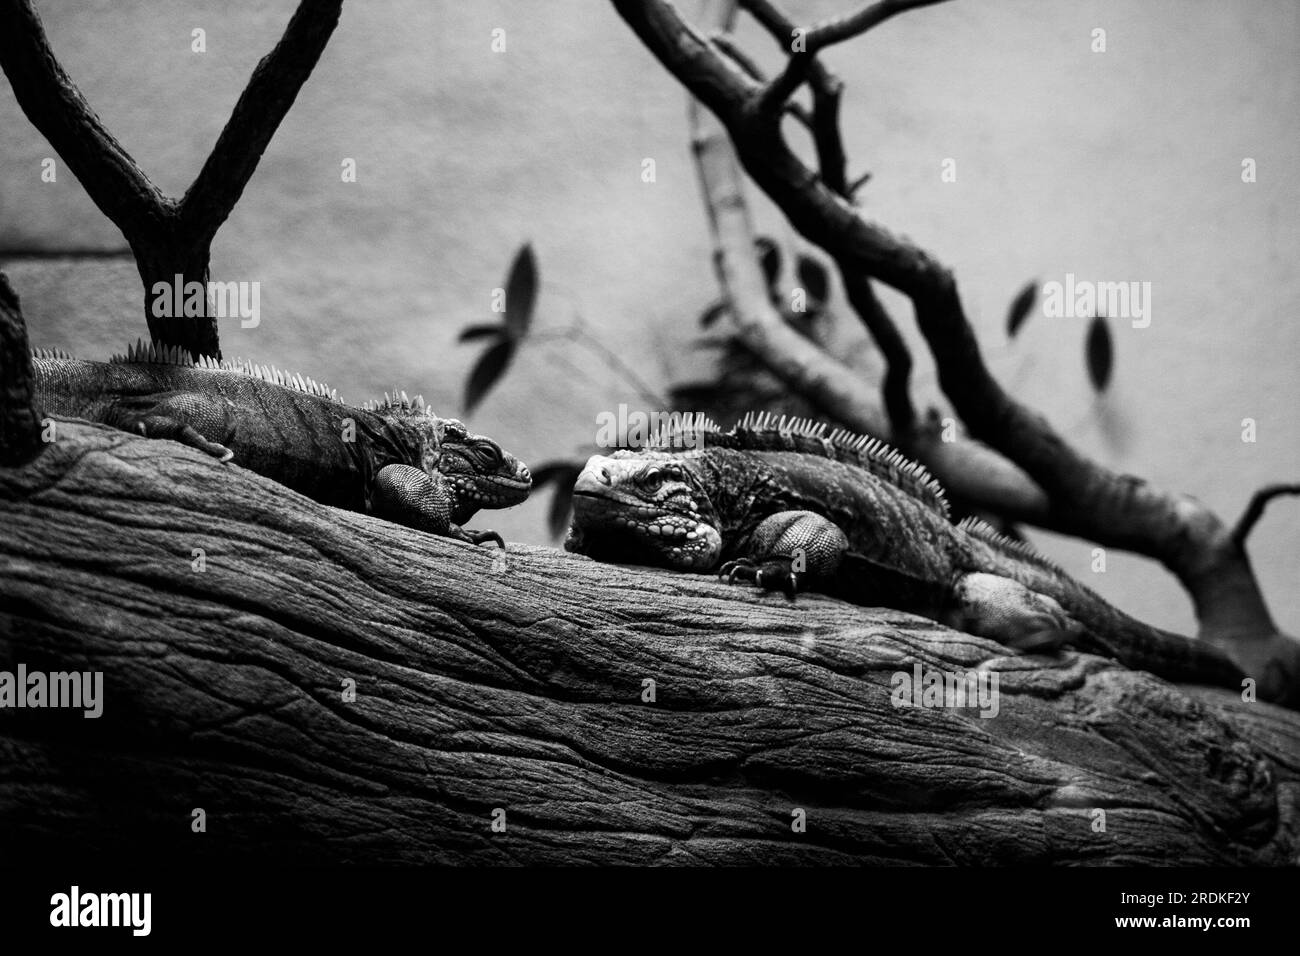 Iguane reposant sur une branche d'arbre en noir et blanc. Banque D'Images